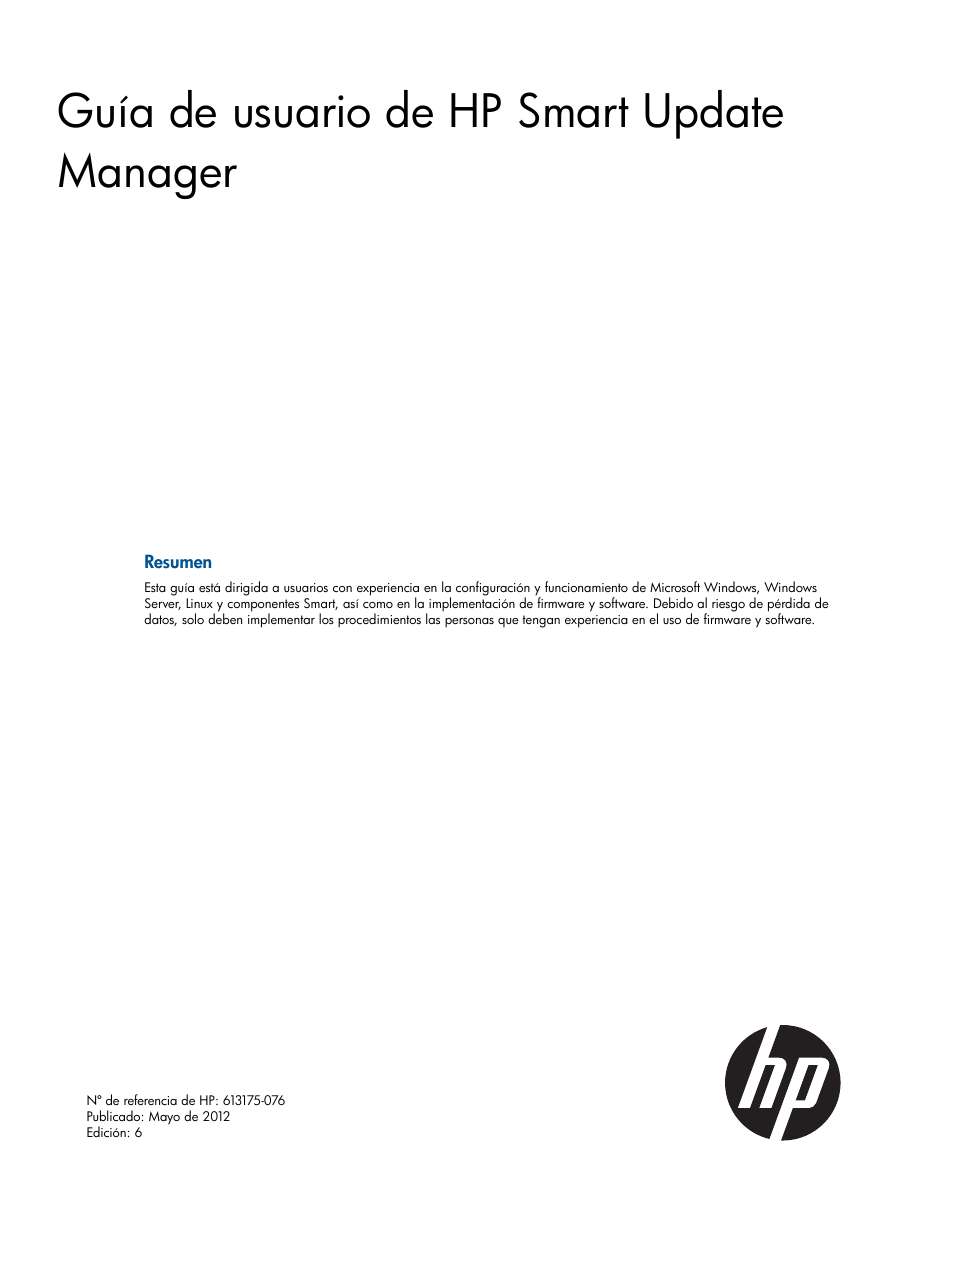 HP Smart Update Manager (Guía de usuario) Manual del usuario | Páginas: 85